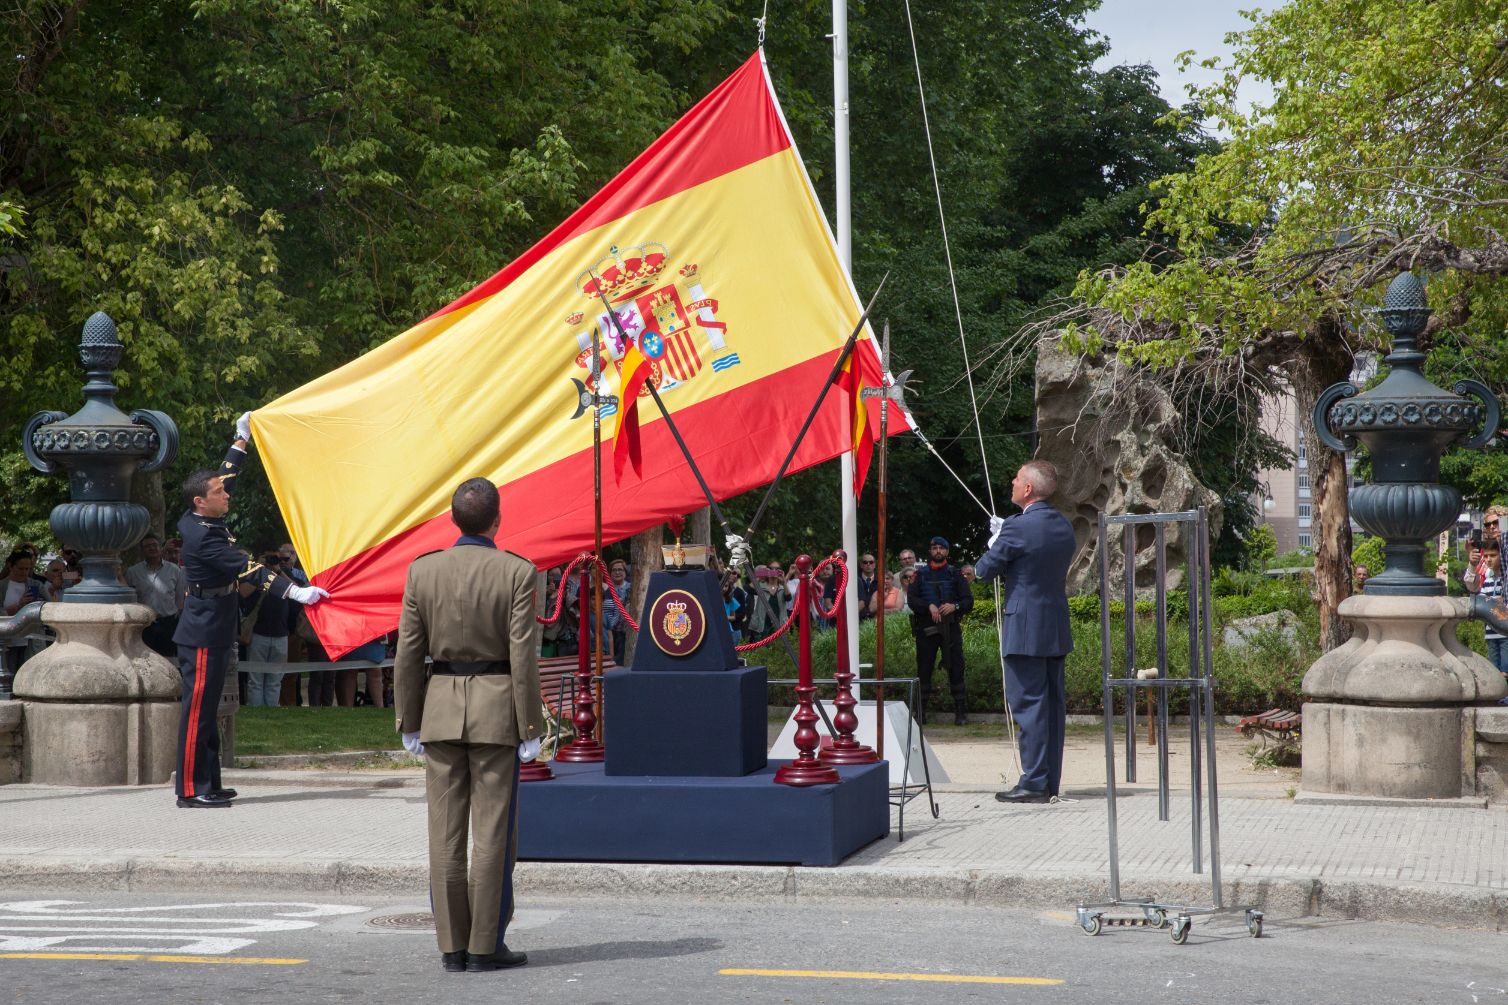 Actividades del Ejercicio de la Guardia Real Orense 2017